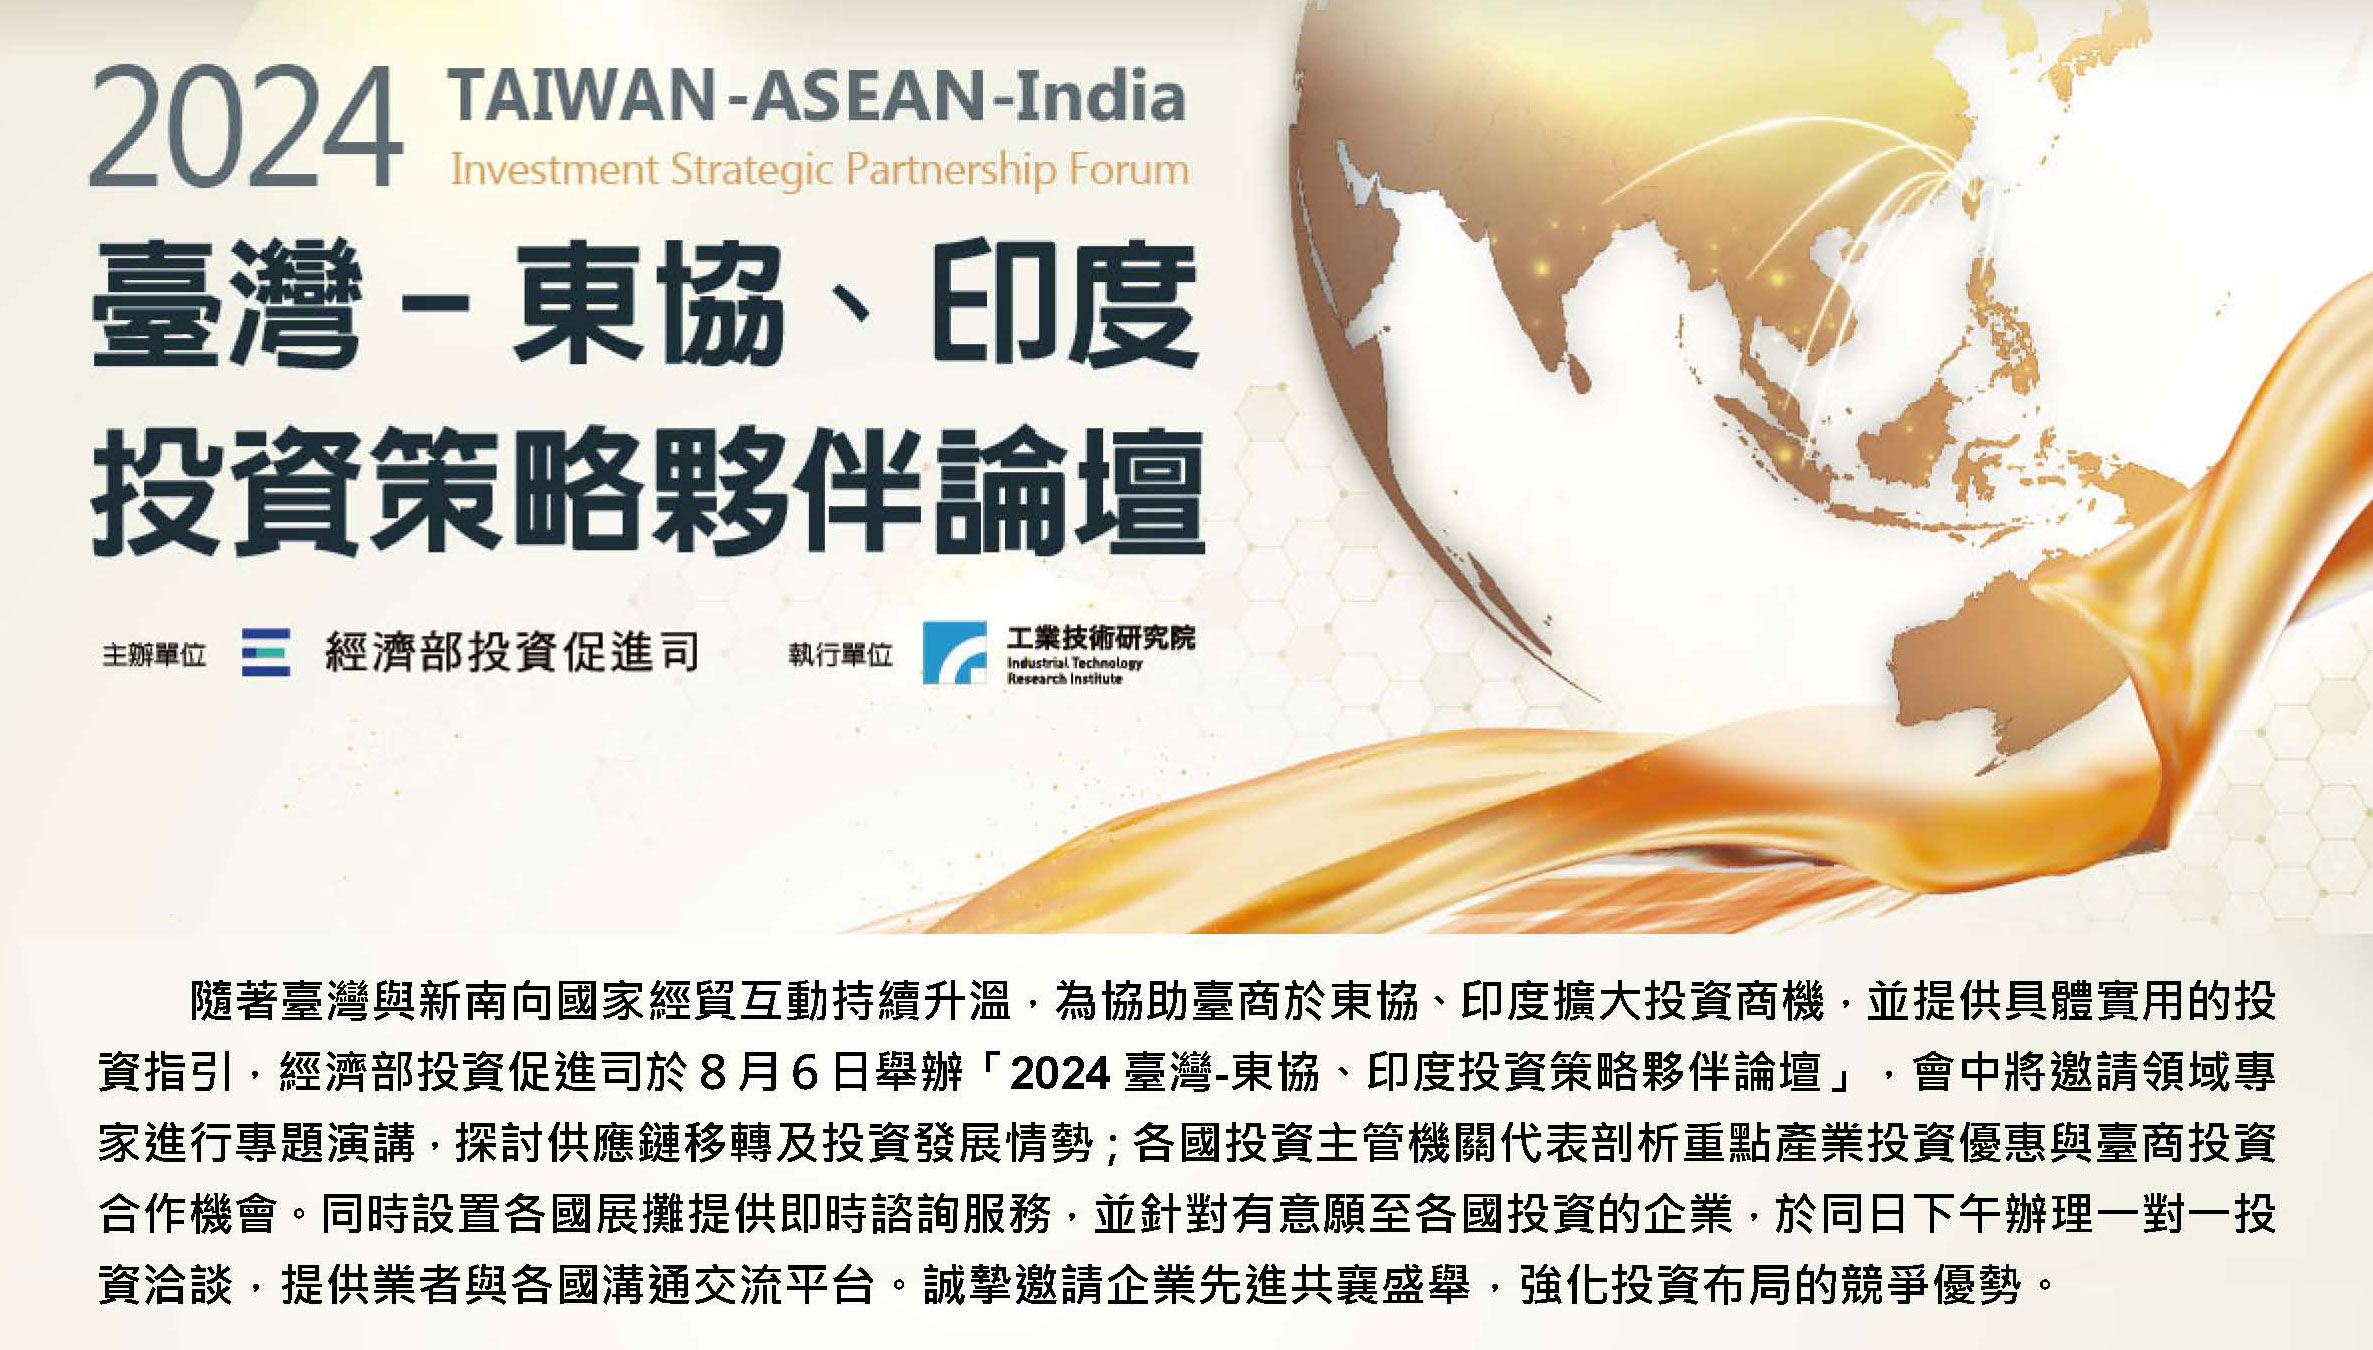 2024臺灣-東協、印度投資策略夥伴論壇